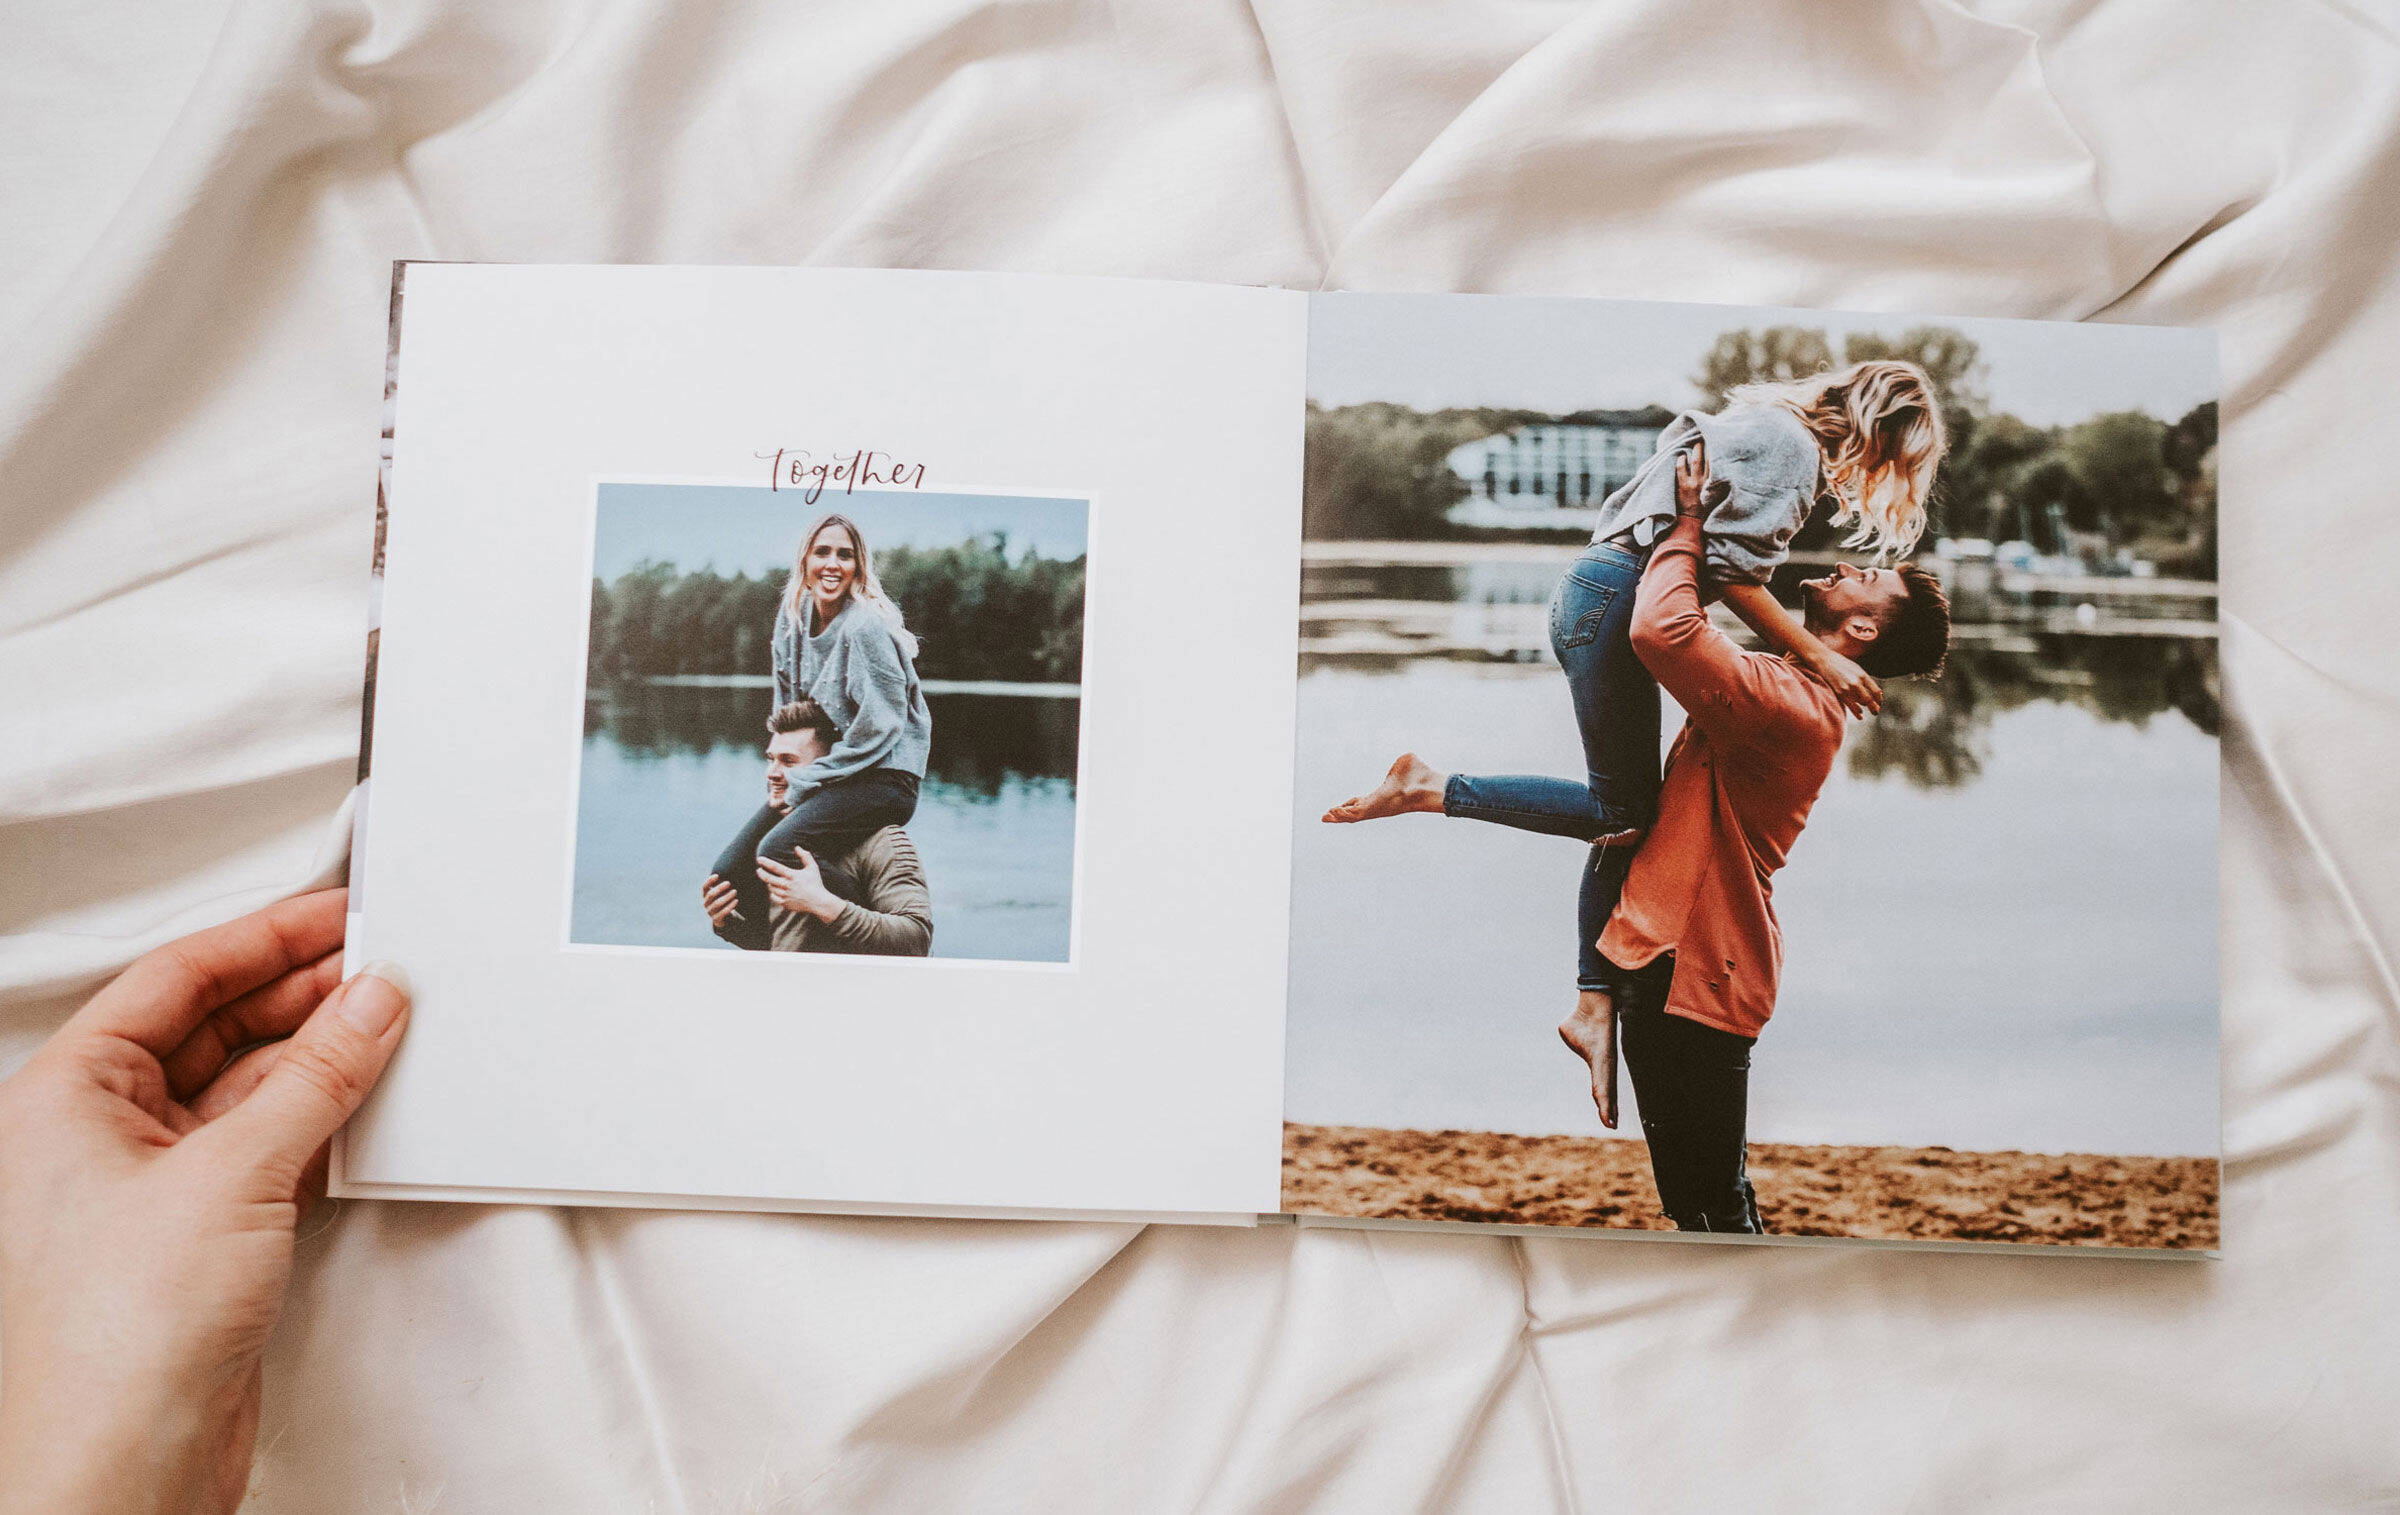 Ein CEWE FOTOBUCH liegt auf einer Decke und wird von einer Frauenhand aufgeschlagen. Zu sehen ist eine Doppelseite mit Fotos der Bloggerin Youdiful mit ihrem Freund und dem Clipart-Schriftzug "together".